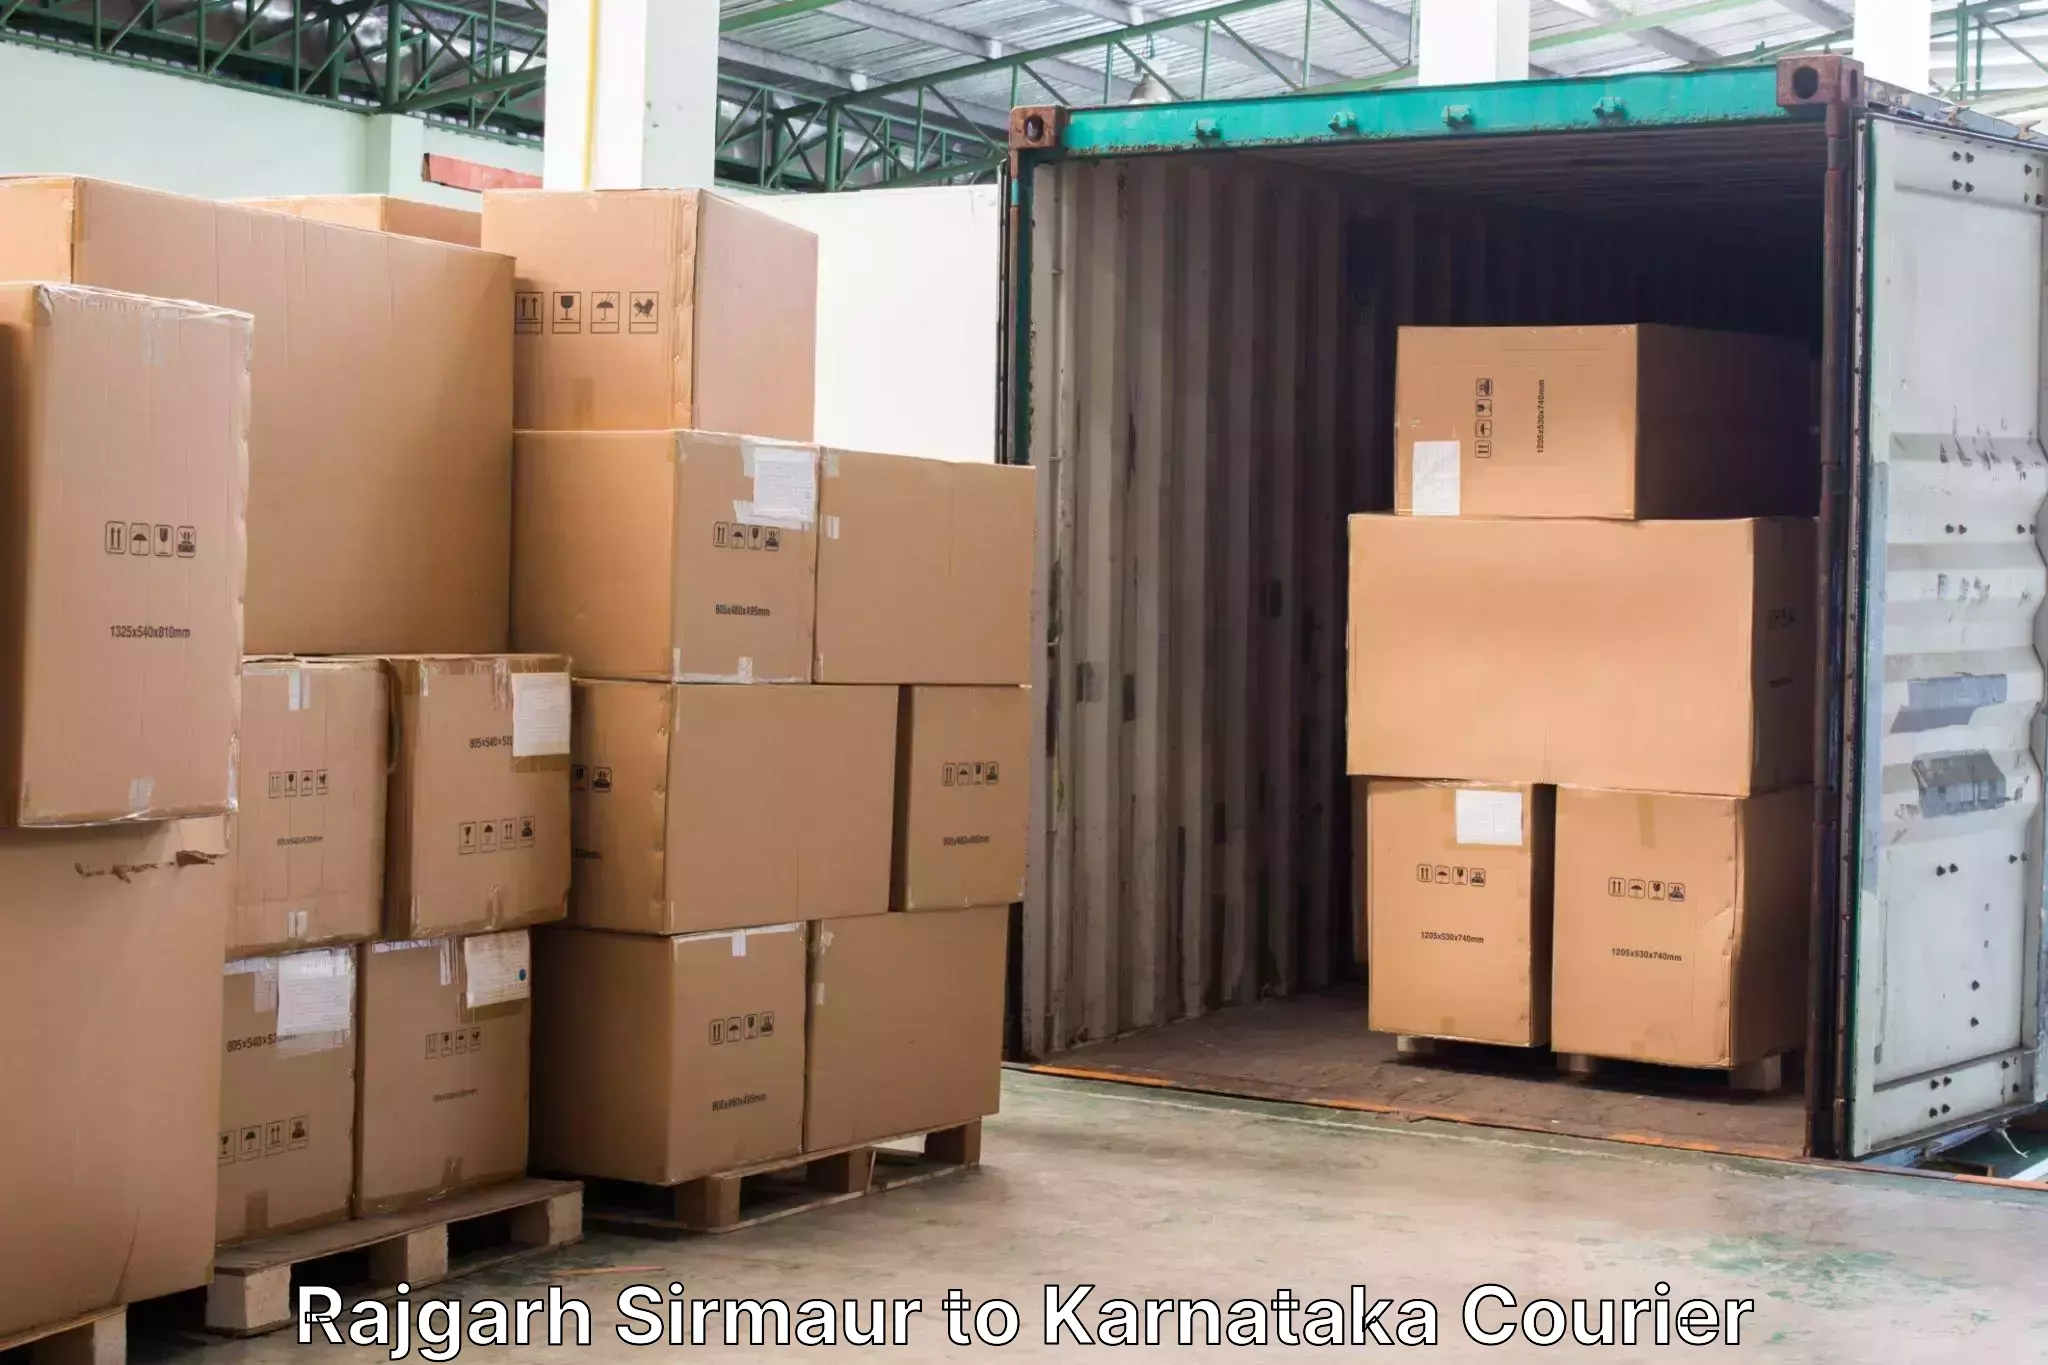 Baggage transport scheduler Rajgarh Sirmaur to Karnataka